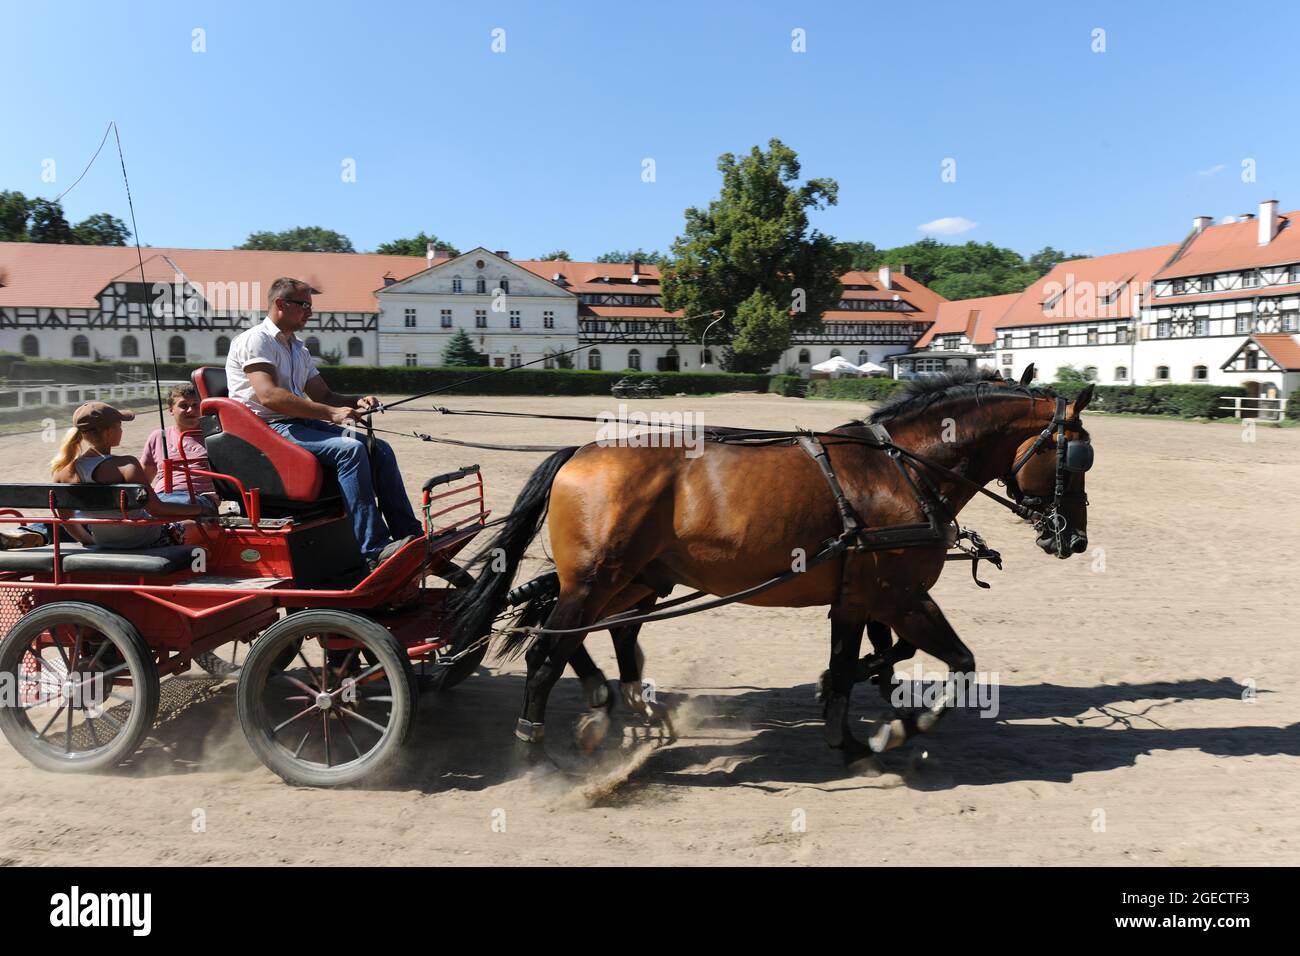 Ksiaz Stud Farm, homme d'entraînement de cheval dans l'arène extérieure, Walbrzych, Basse Silésie, Pologne Banque D'Images